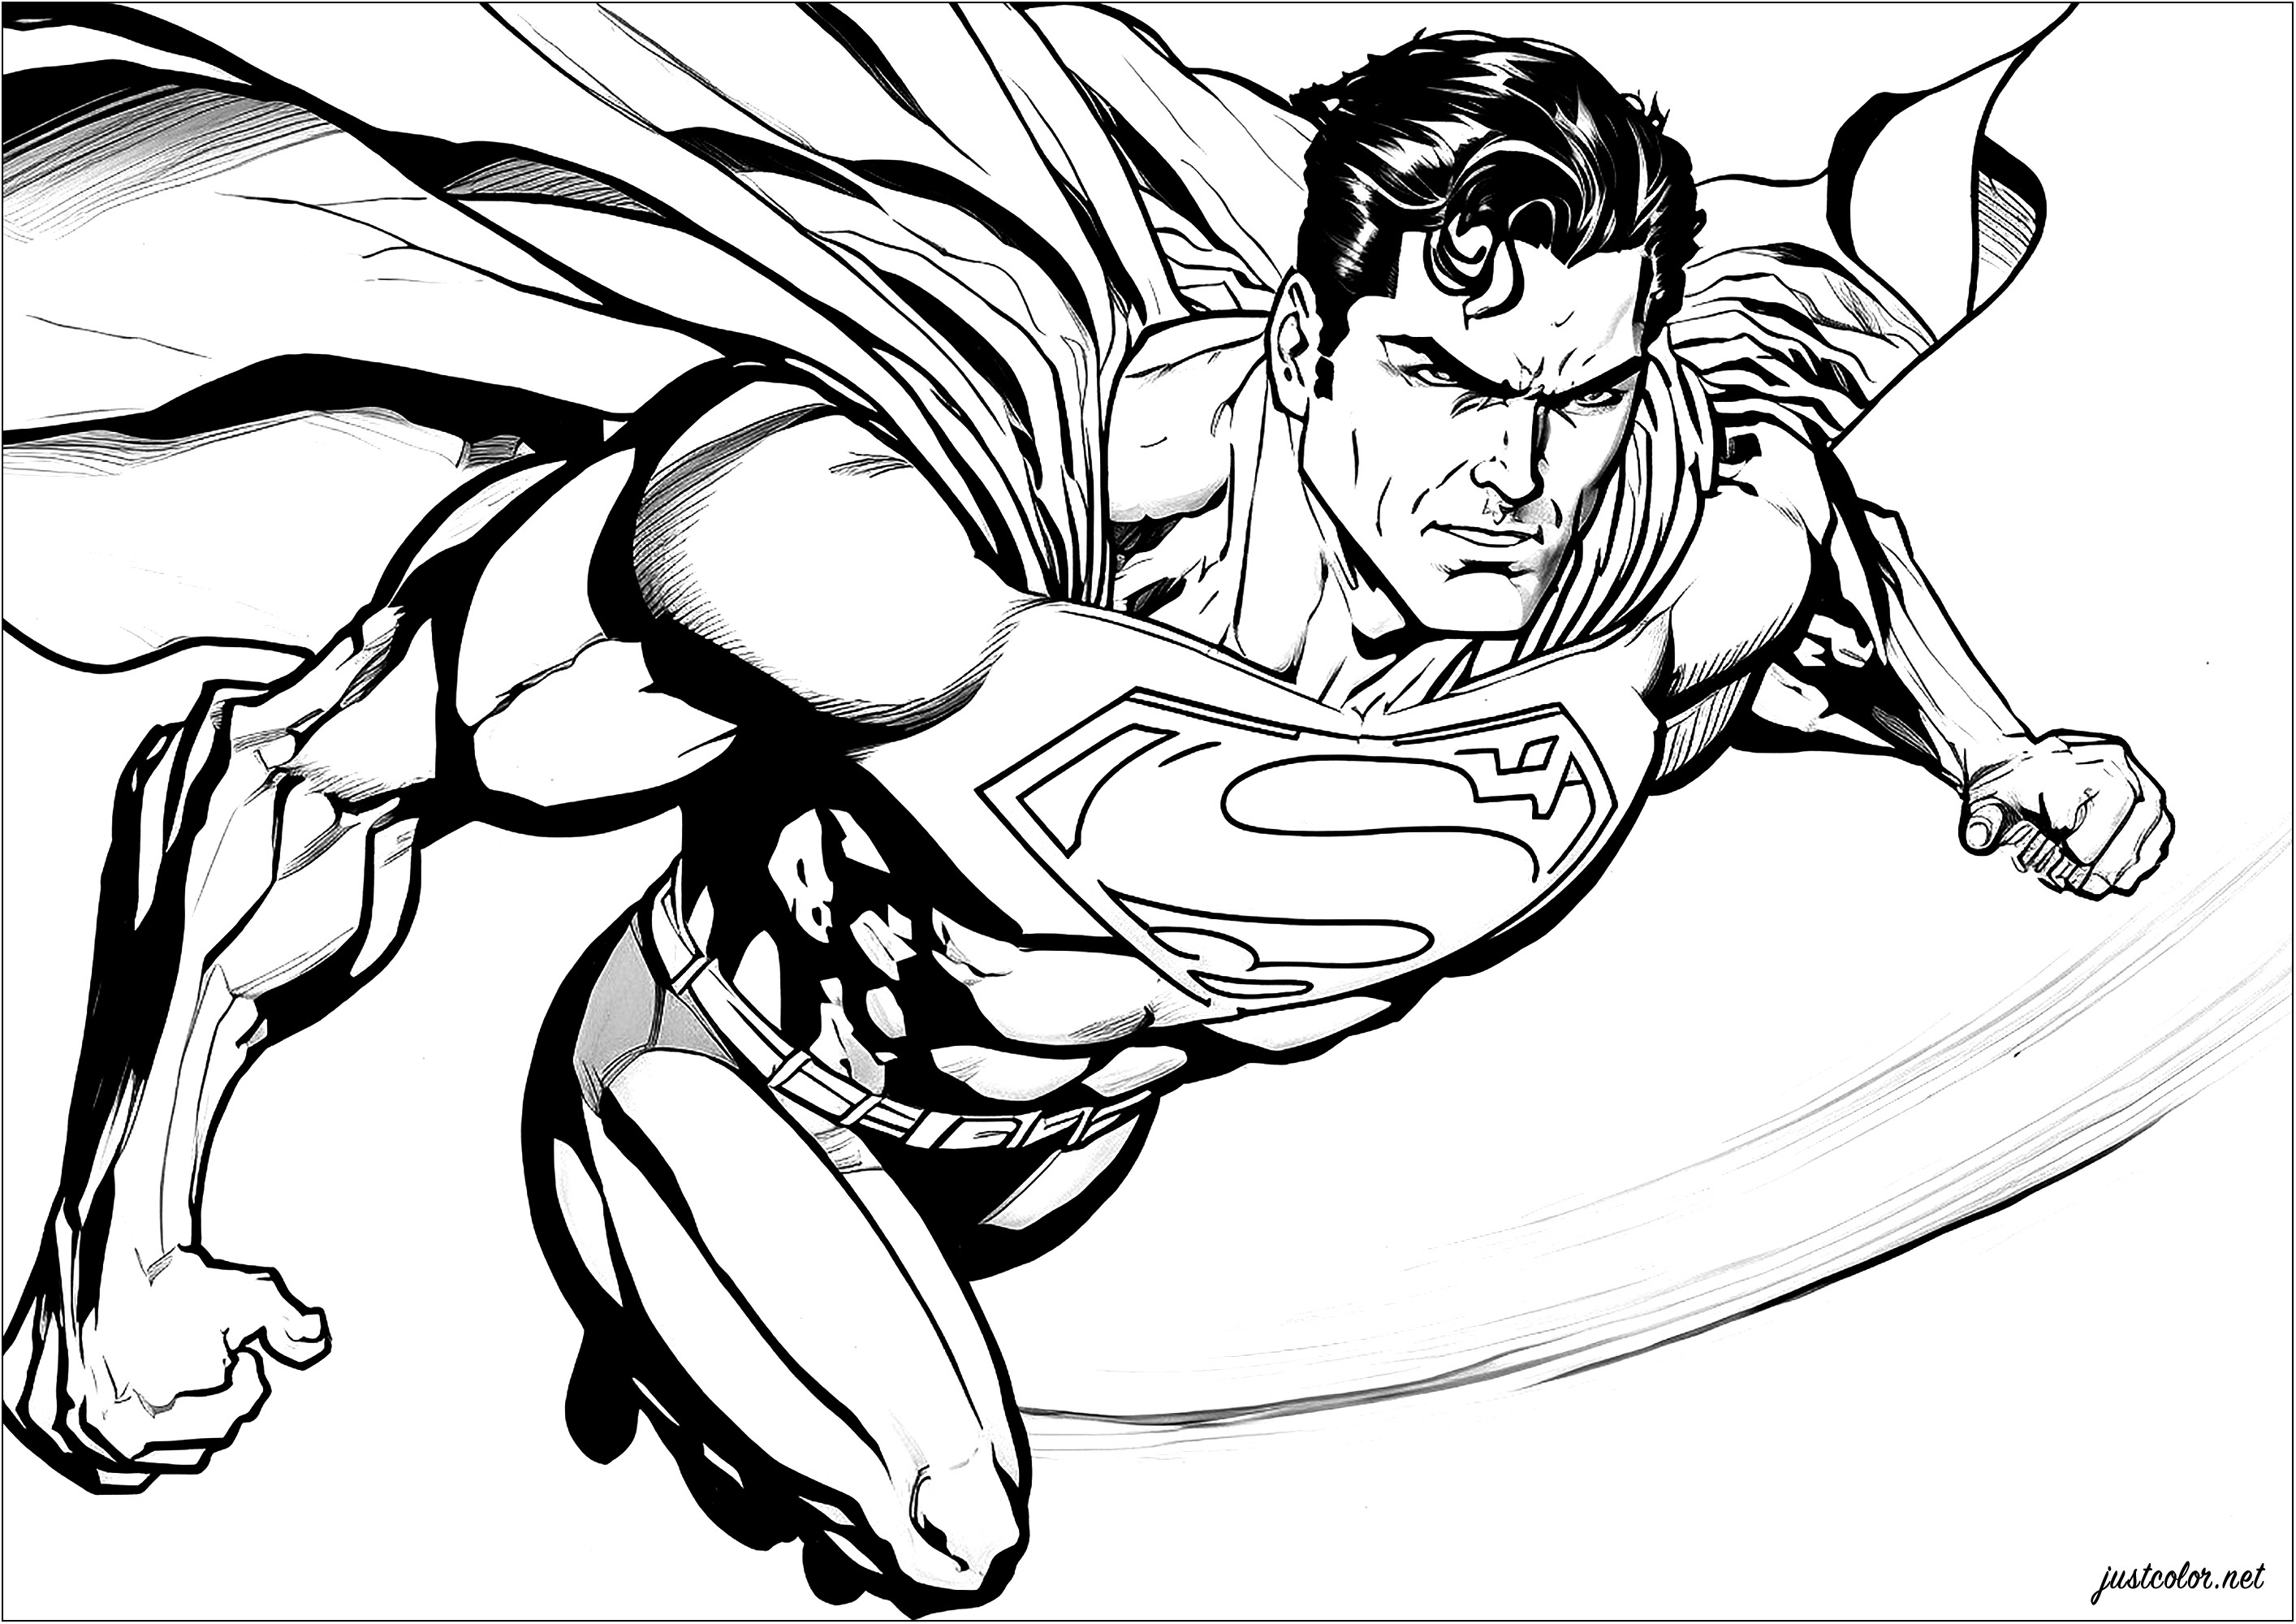 Superman en plein vol, cape dans le vent. Ce coloriage représente Superman en train de voler. On voit le super-héros, vêtu de son costume (bientôt rouge et bleu grâce à vous), en train de voler dans le ciel, avec une expression de détermination sur son visage.